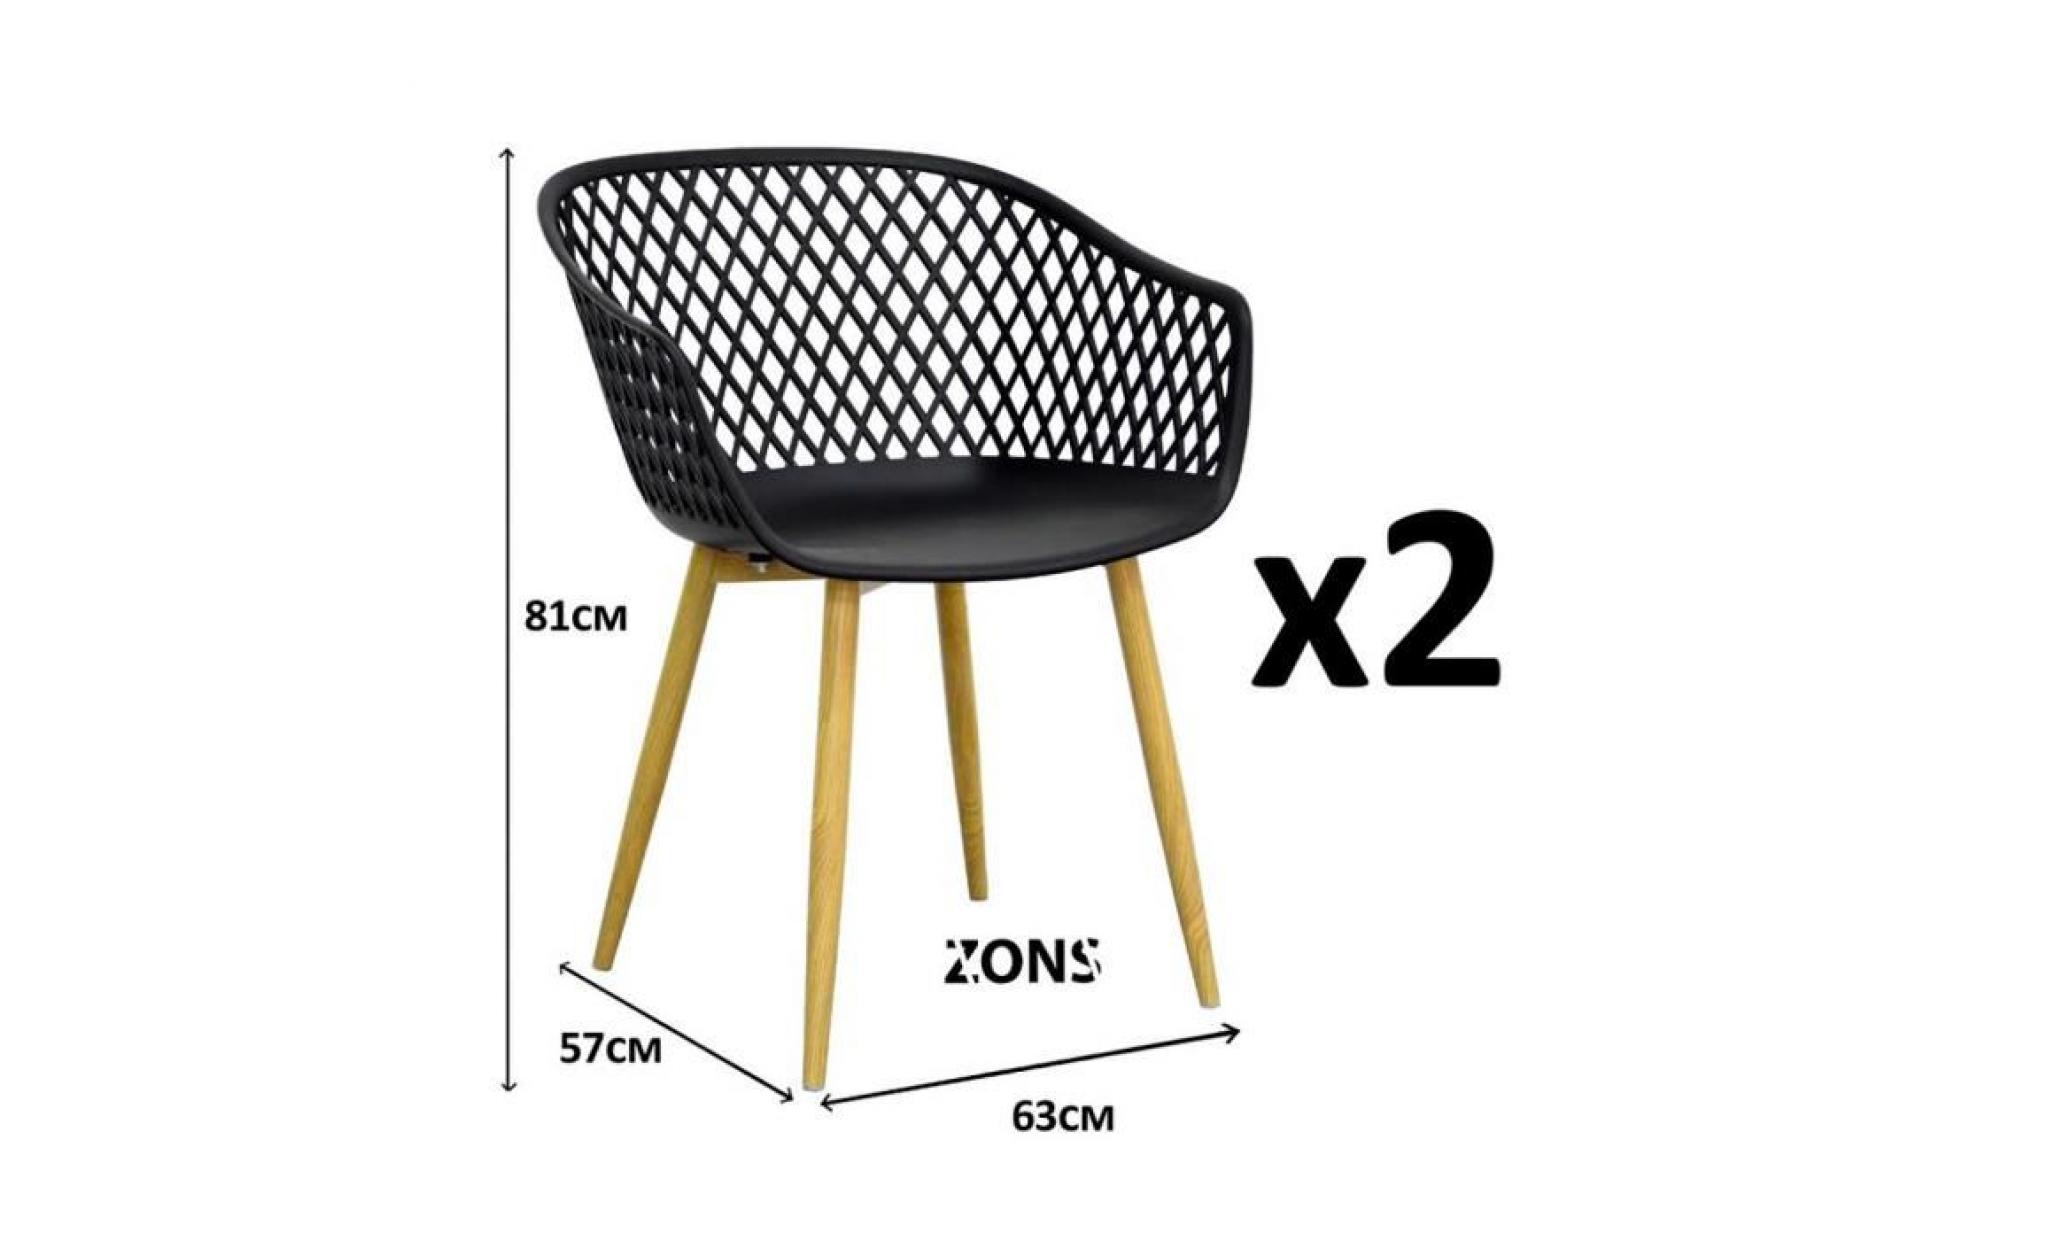 tango lot de 2 fauteuil chaise salle a manger scandinave en métal avec assise en pp noir 57x63xh81cm